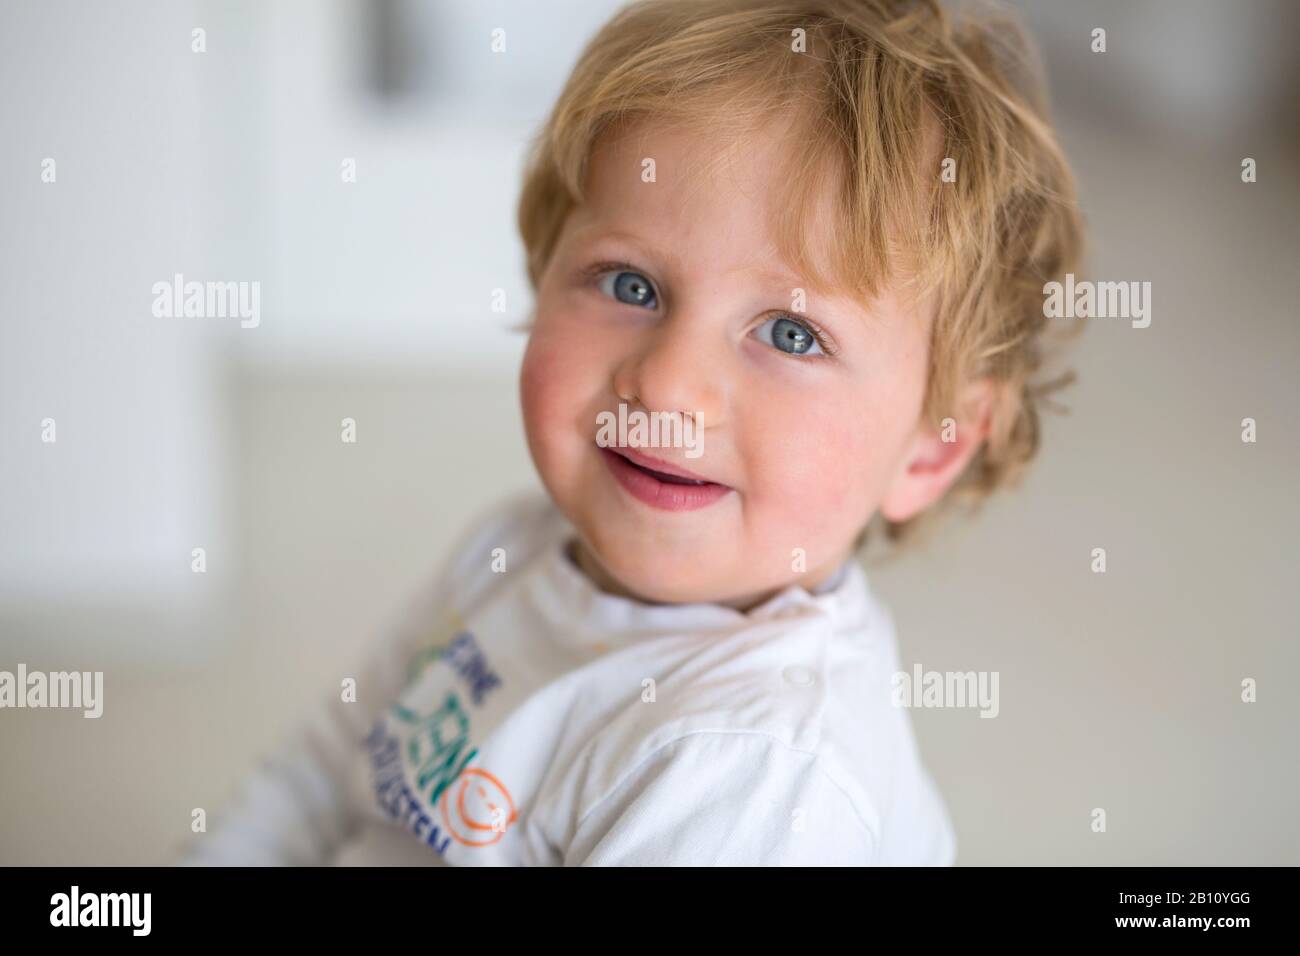 Little boy, portrait Stock Photo